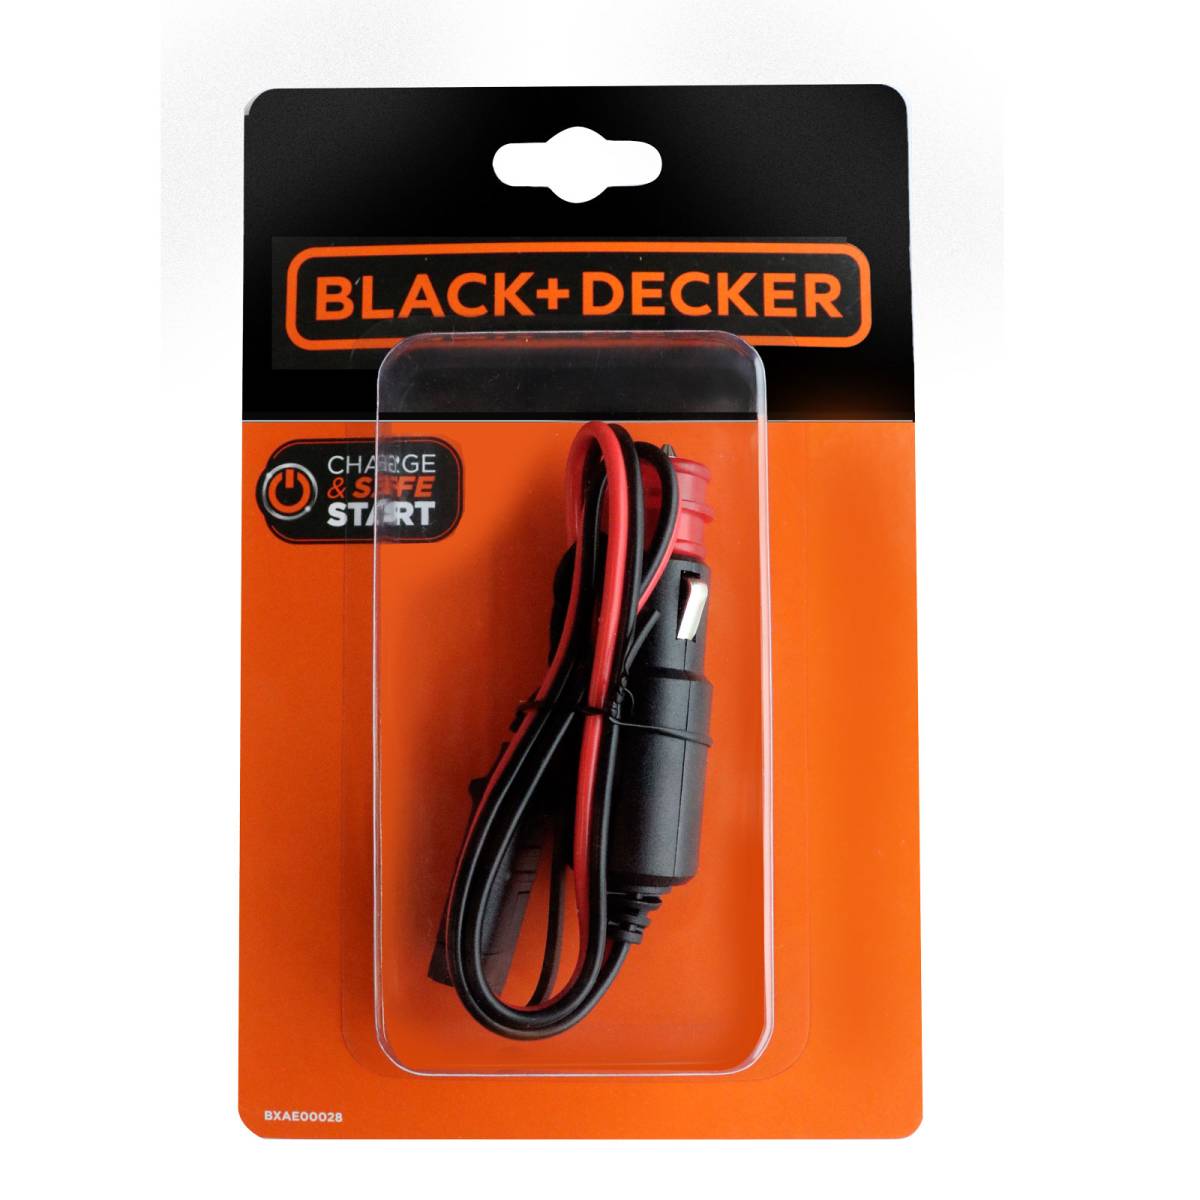 Black + Decker Multifunction charger 6V & 12V 4A for lead